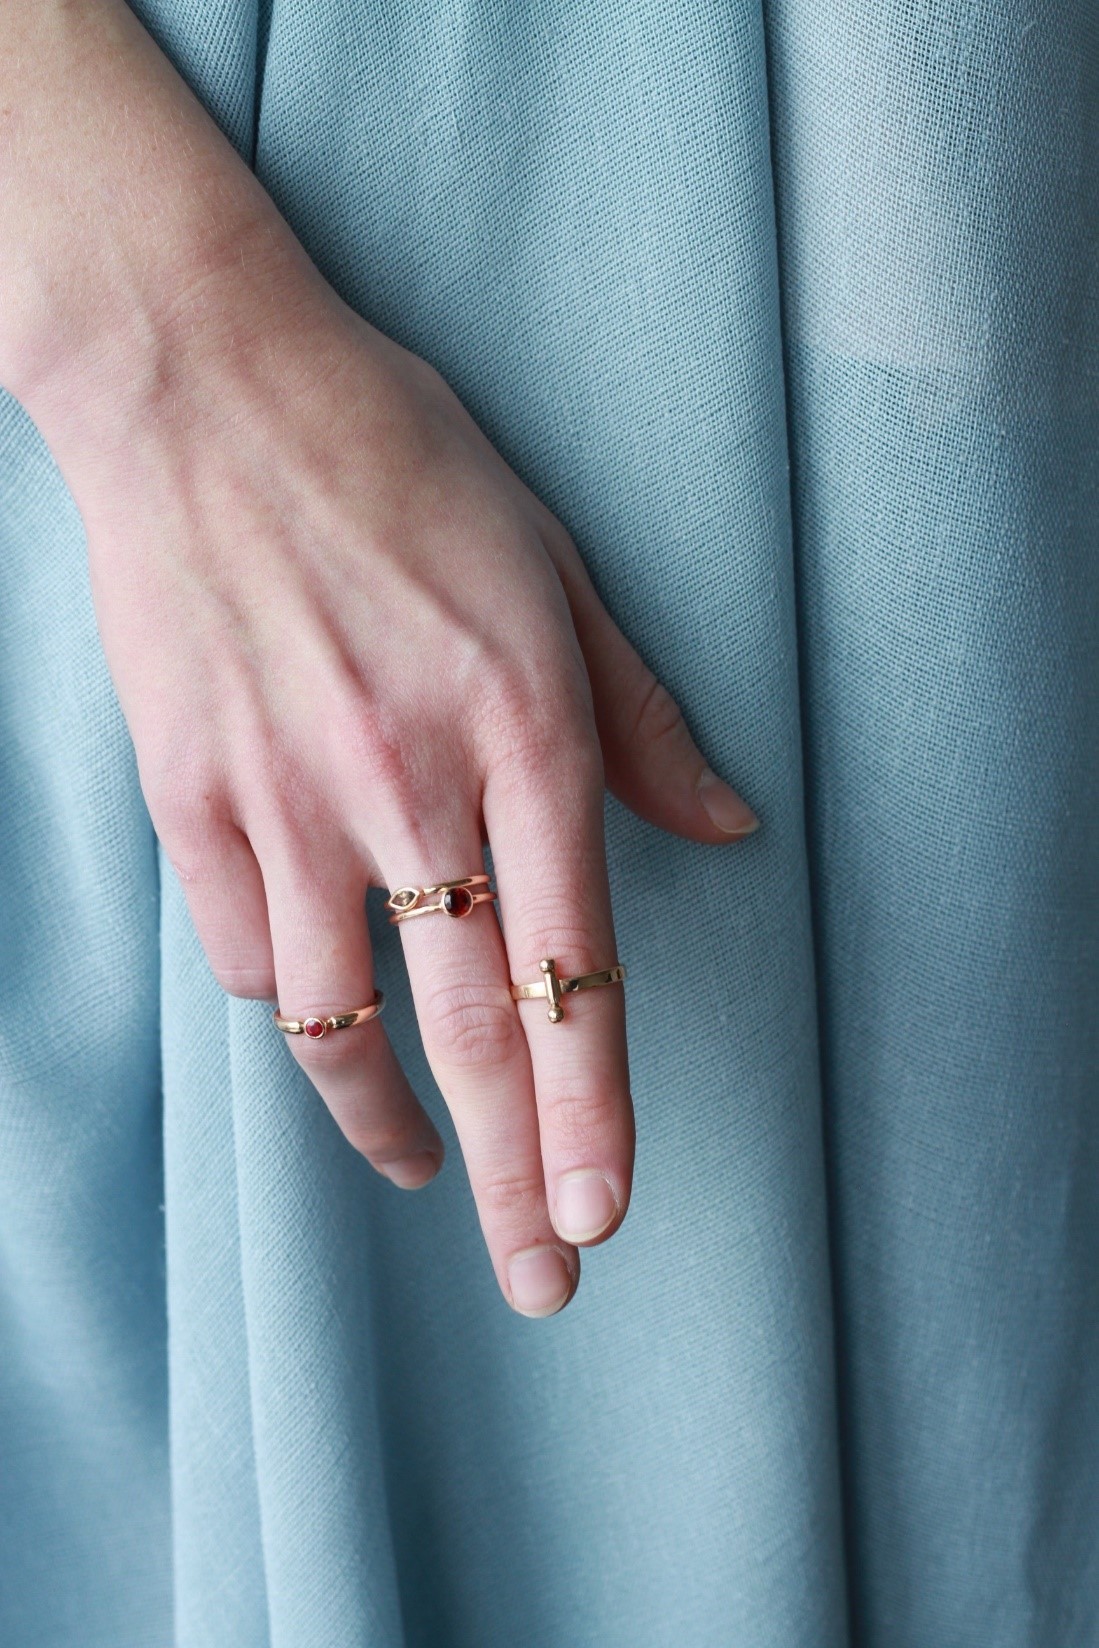 Имеет ли значение, на каком пальце вы носите кольцо?